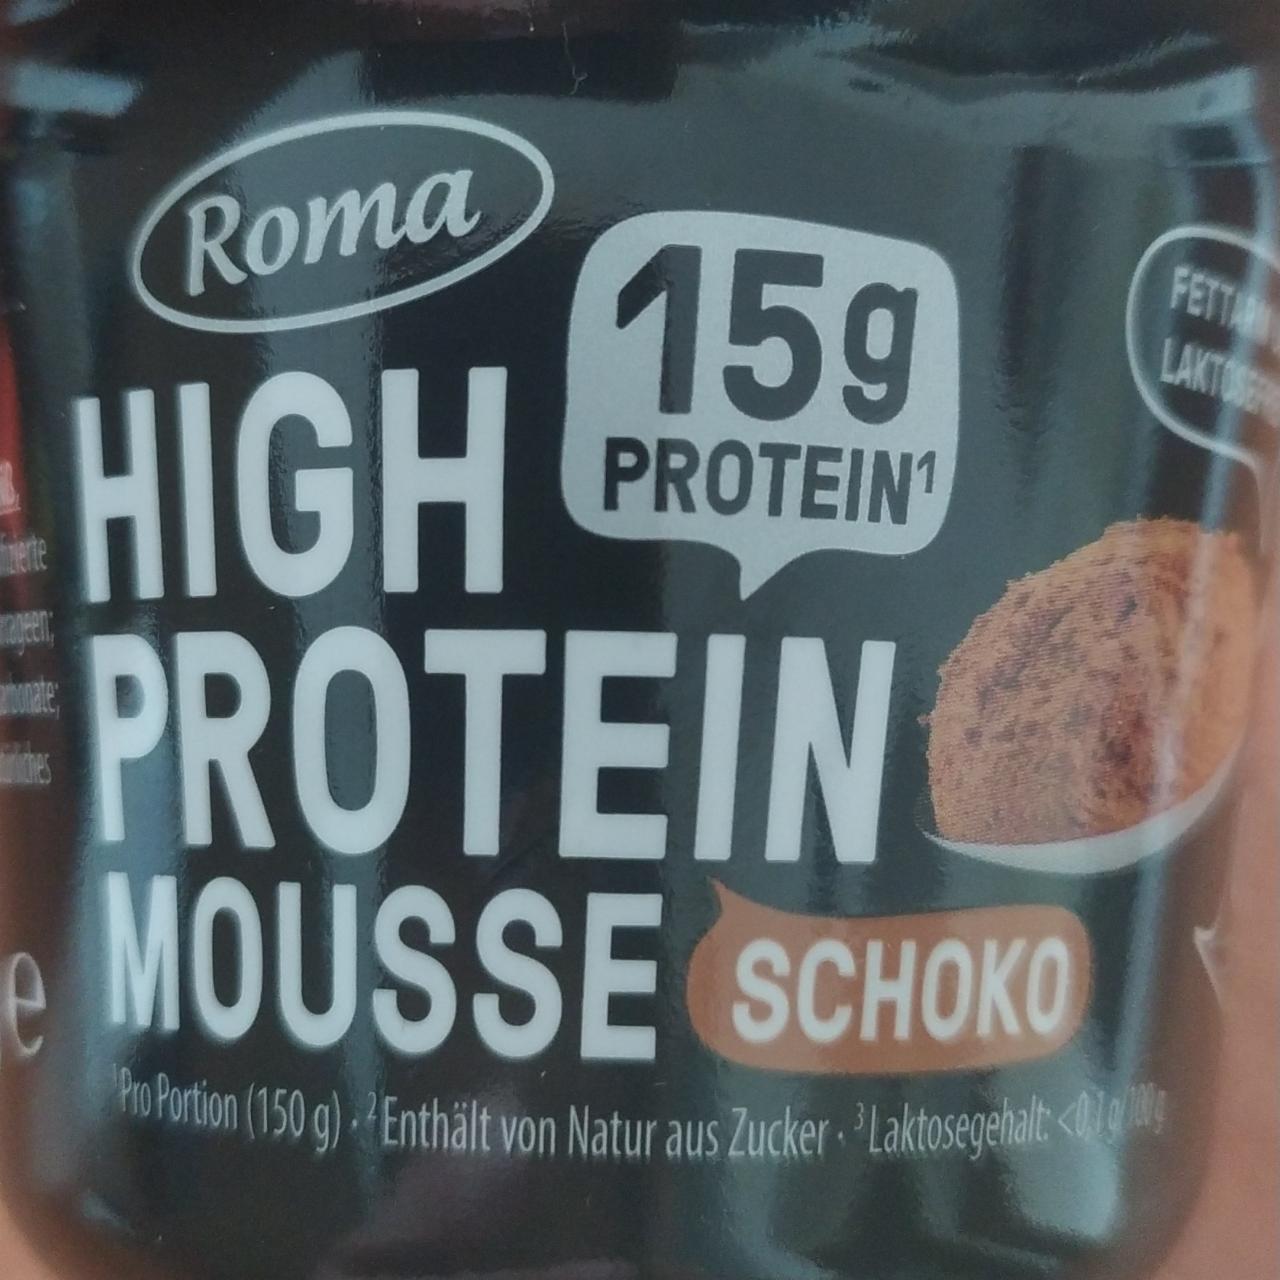 Fotografie - High protein mousse schoko Roma